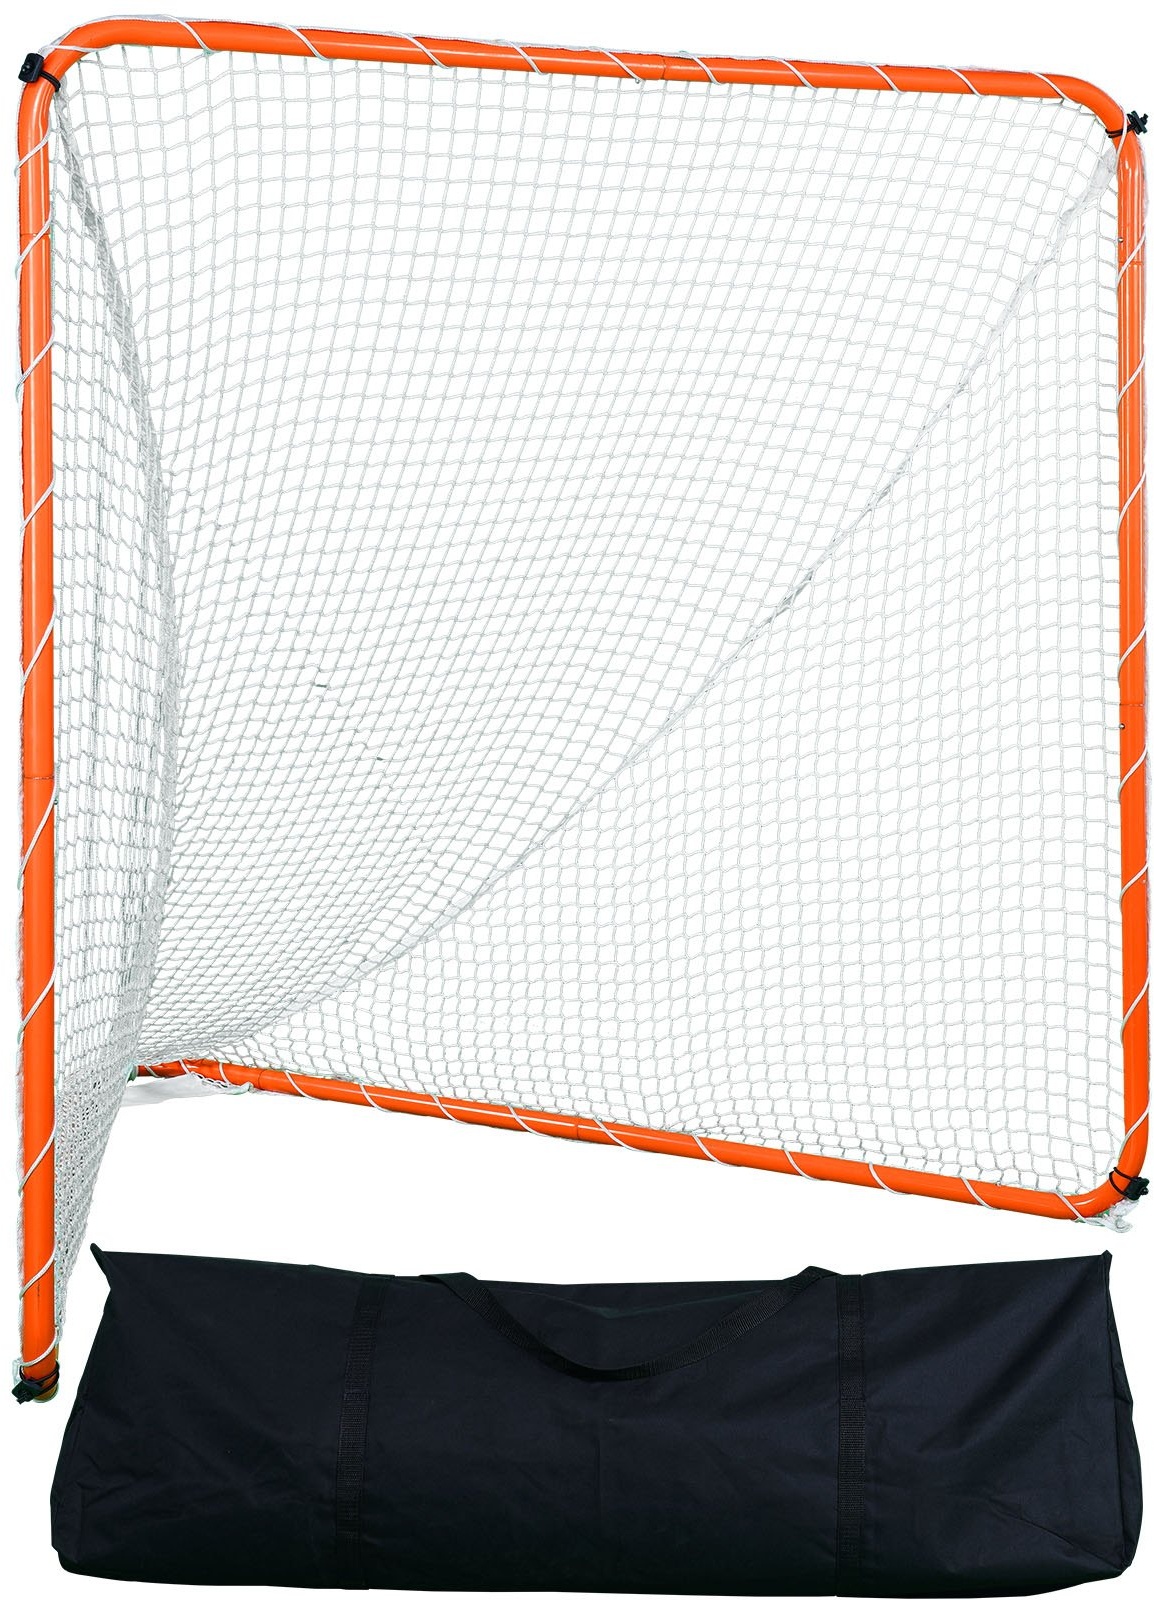 VEVOR Lacrosse-Tor, 6' x 6' Lacrosse-Netz, Stahlrahmen-Lacrosse-Trainingsausrüstung für den Hinterhof, tragbares Lacrosse-Tor mit Tragetasche, schneller und einfacher Aufbau, perfekt für das Training